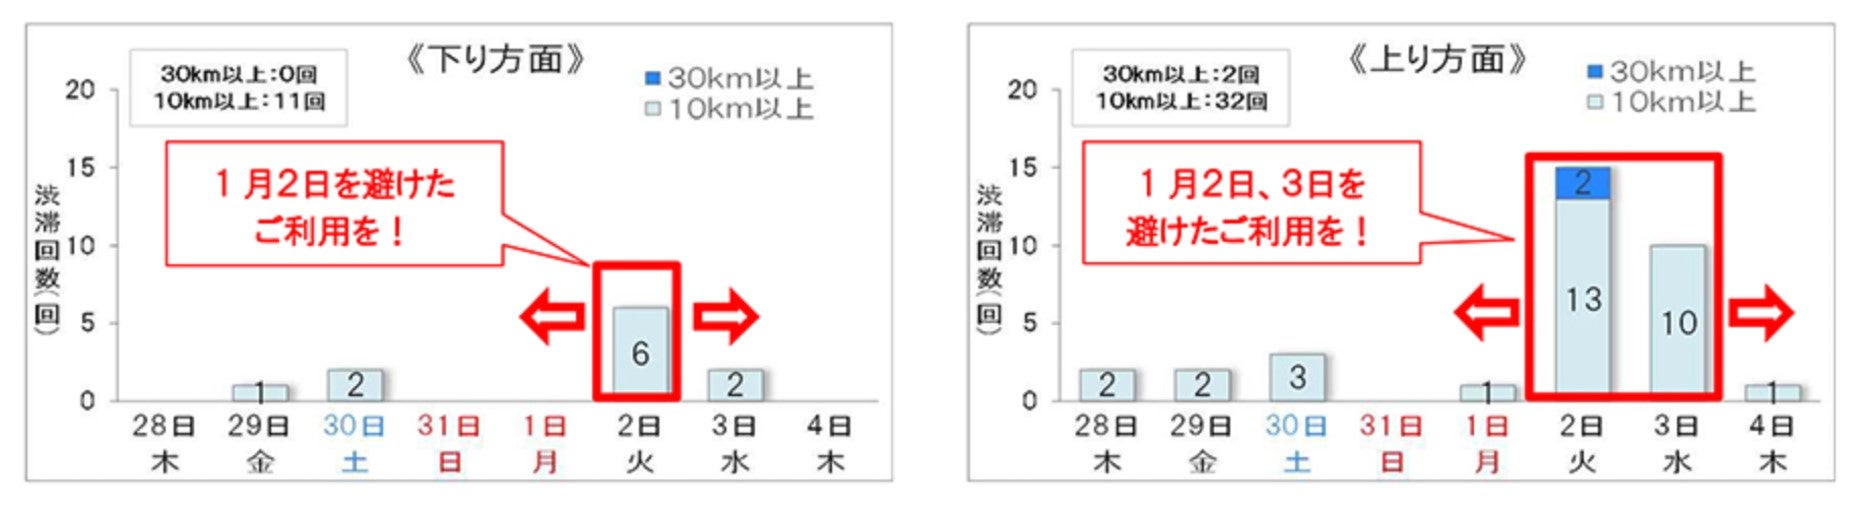 NEXCO東日本管内で2023年末から2024年始にかけて予測される10キロ以上の渋滞数